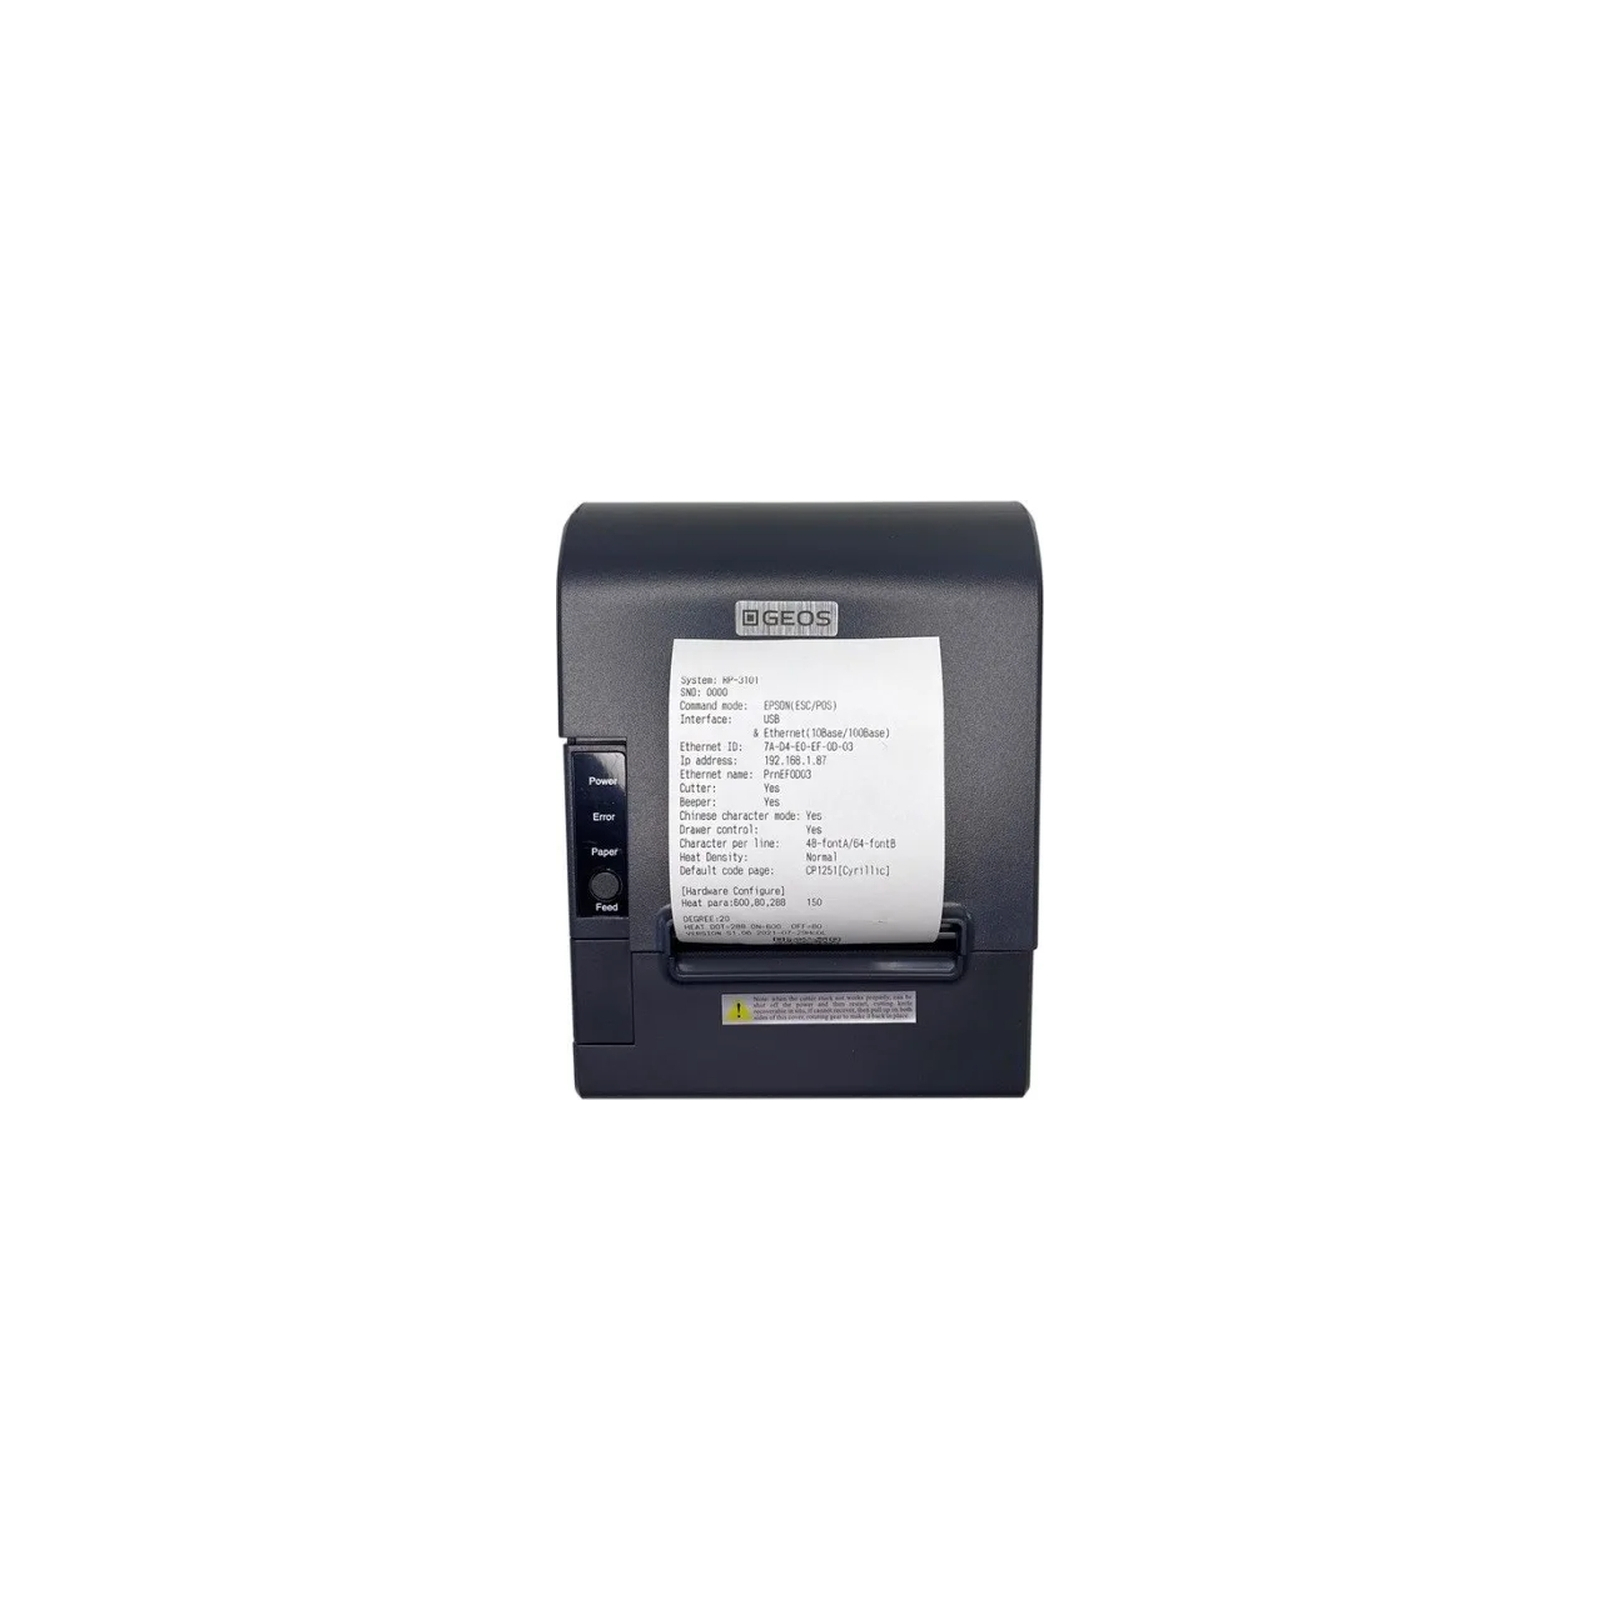 Принтер чеков Geos RP3101 с разделителем 58-80мм, USB, Ethernet (RP3101 divider 58/80) изображение 4